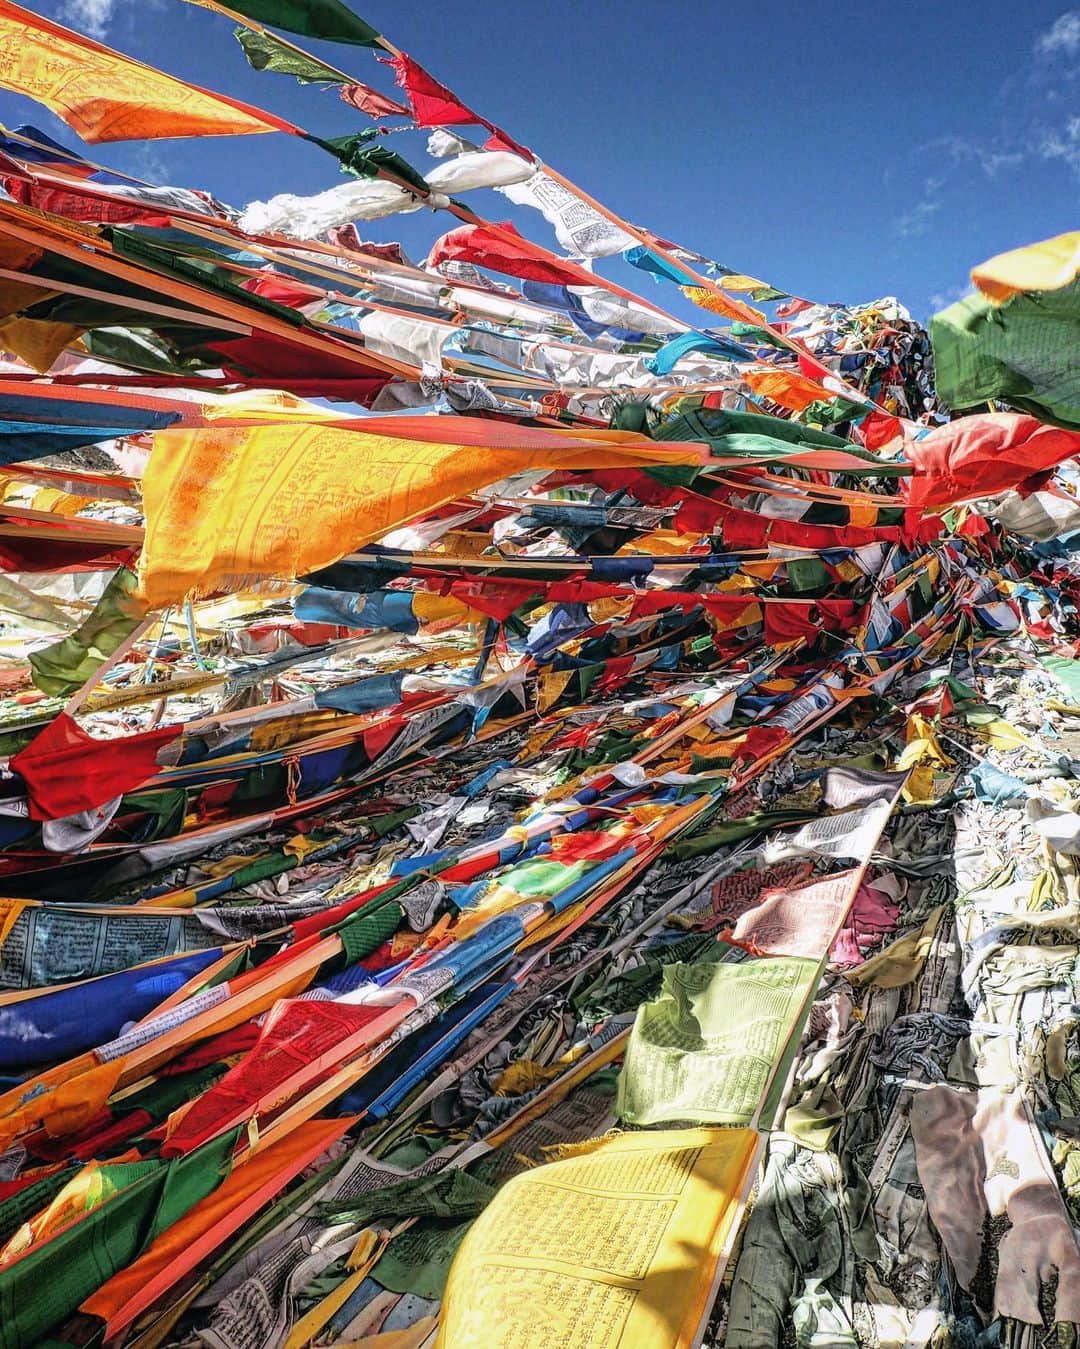 石川直樹のインスタグラム：「For Himalayas➉ Moving to the mountains. #Tibet. 標高5000mの峠を越えて、ニューティンリー着。1枚目の写真は、2つまえのポストと同じ峠です。10年前と今。#タルチョ が増えまくってる。 4枚目は、今日チョオユー組とシシャパンマ組に途中で分かれた際の荷物の積み替え風景。 5枚目はシシャパンマを望む展望台にあった地図。昨日泊まった国境の街、キロンは「吉隆」と書くんですね。 6枚目は、さっき着いたばかりのニューティンリー。10年前も2001年も、ぼくはオールドティンリーに泊まったのでした。ニューティンリーは発展している普通の街。 明日はオールドティンリーを経由して、チョオユーのプレBCへ。#チベット にいるってだけでワクワクしてます。」